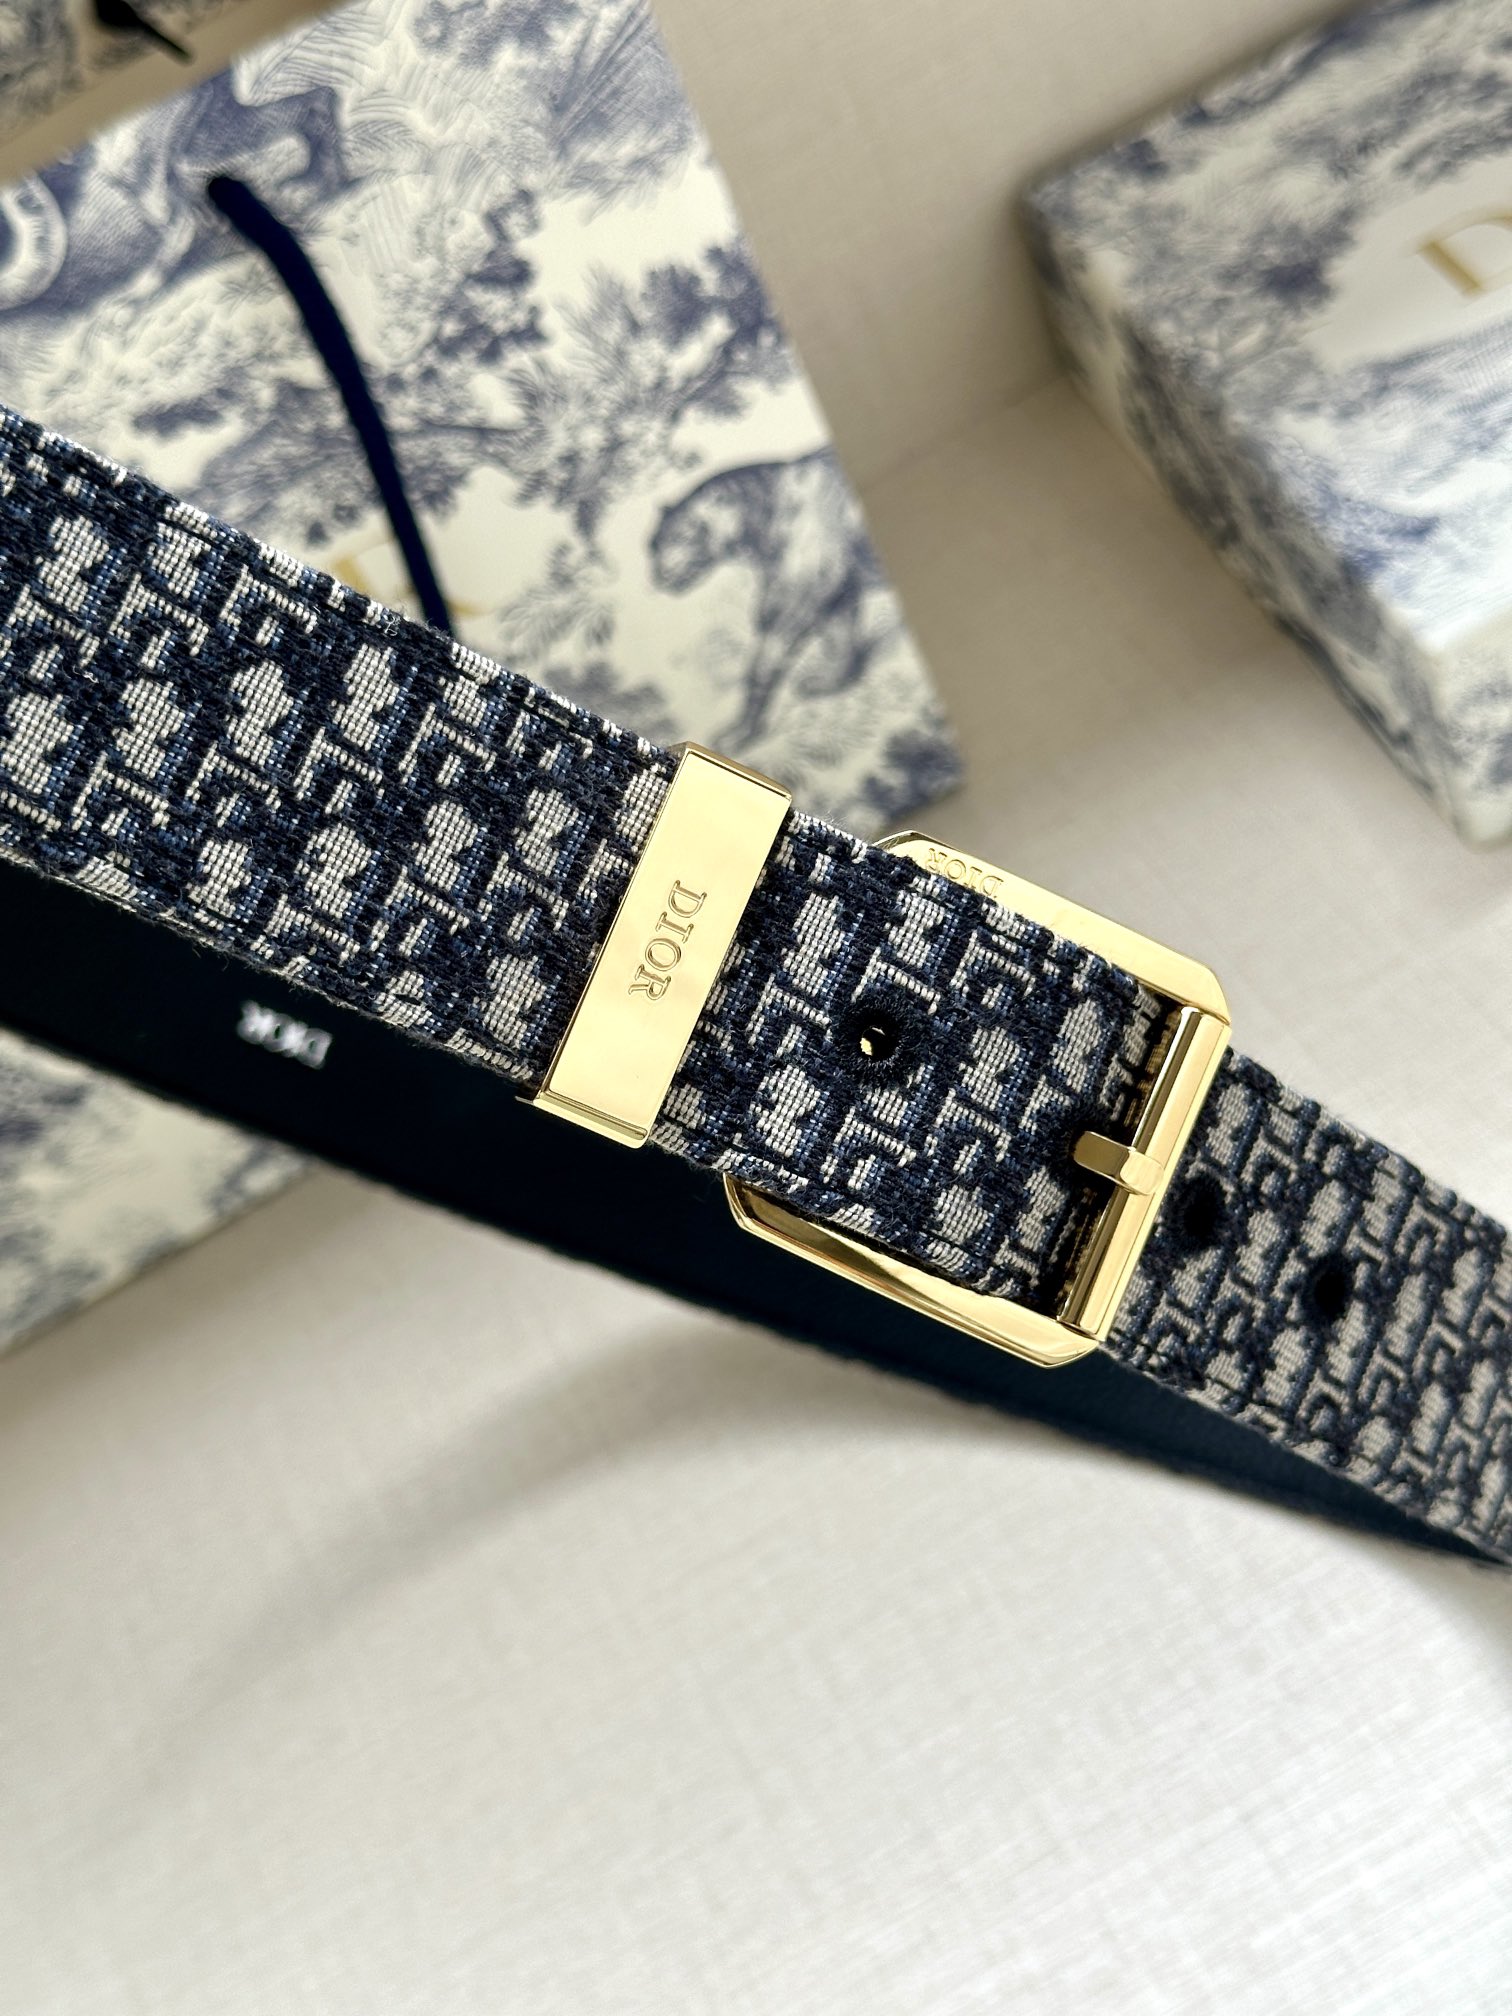 宽度3.5cmDior这款腰带采用黑色超迷你Oblique印花面料精心制作搭配金属覆层黄铜腰带扣彰显优雅